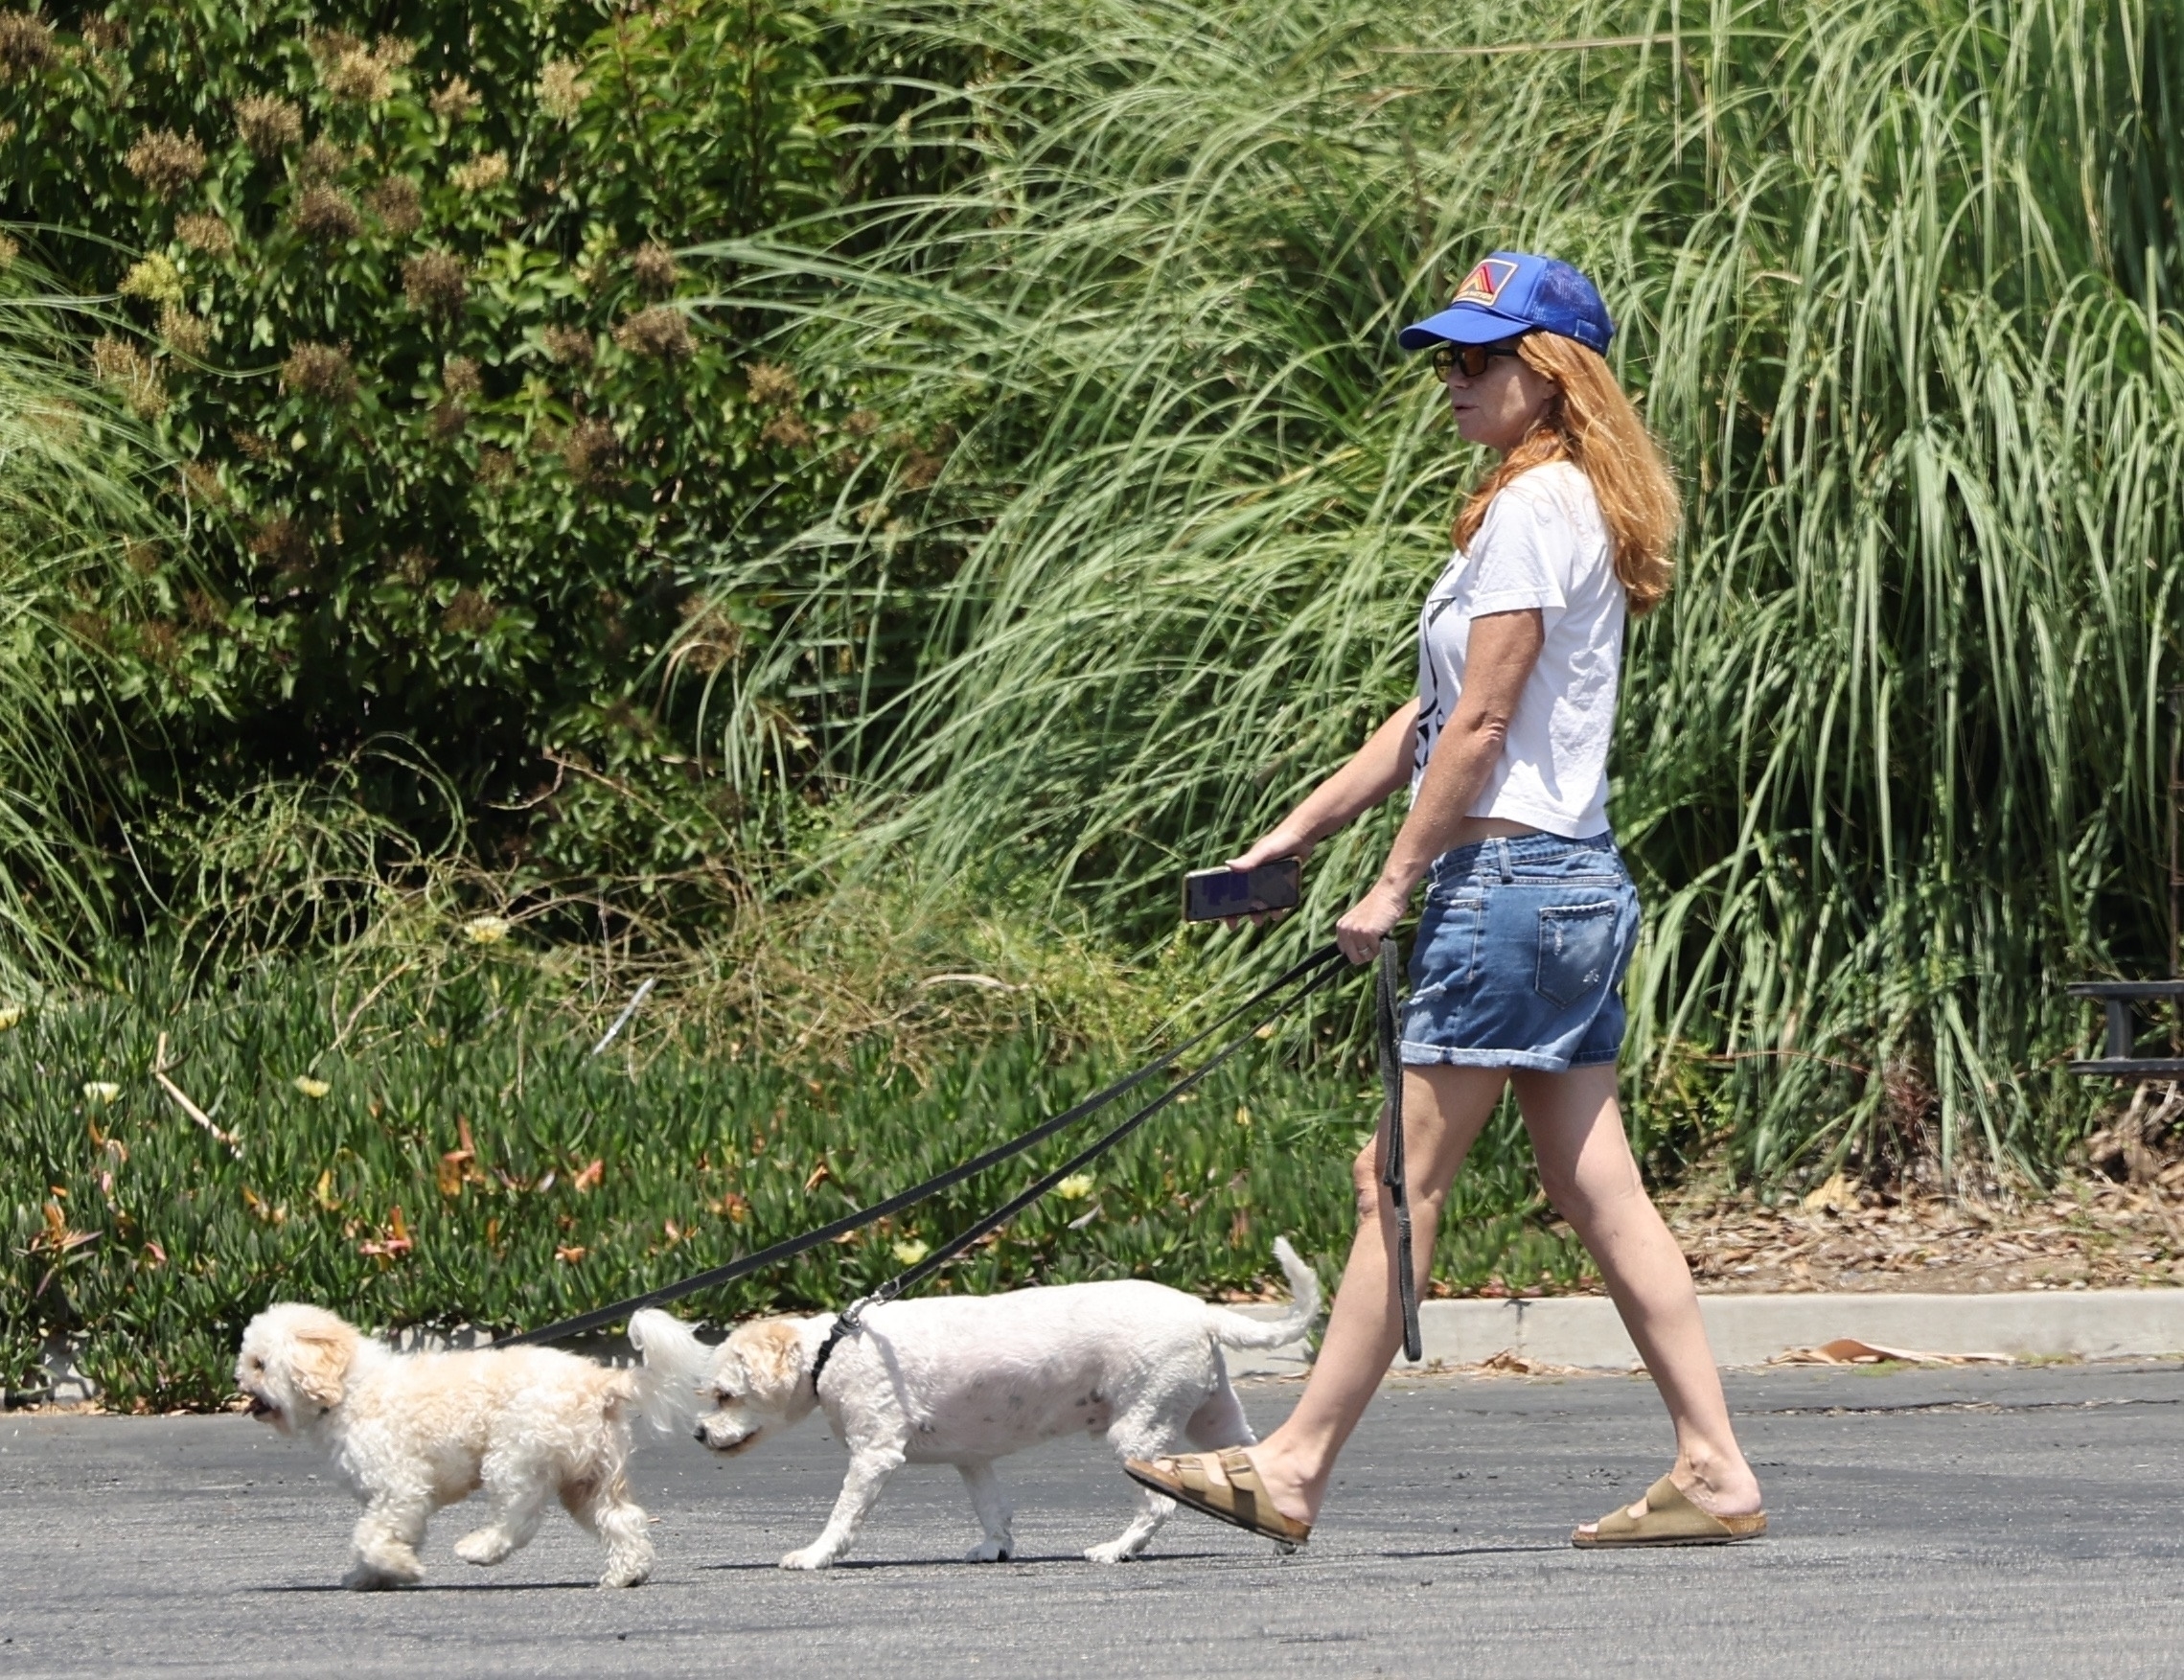 Пэтси Палмер выгуливала по улице своих собак в футболке с интересной надписью